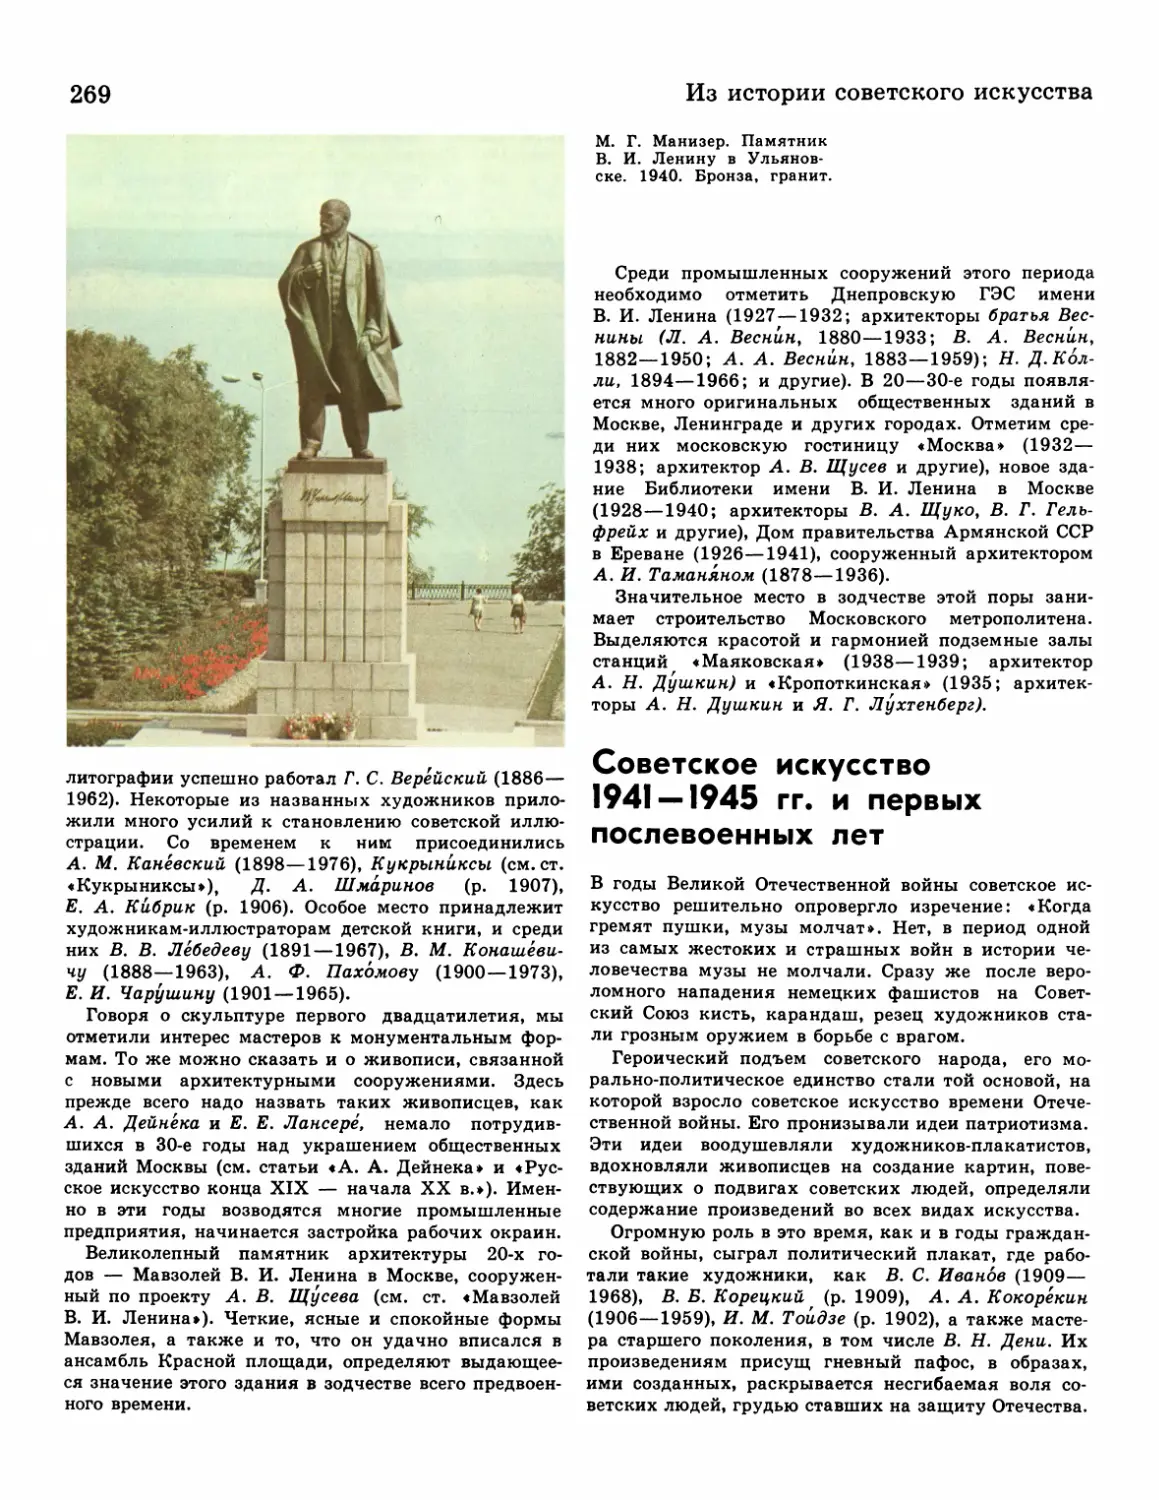 Советское искусство 1941—1945 гг. и первых послевоенных лет